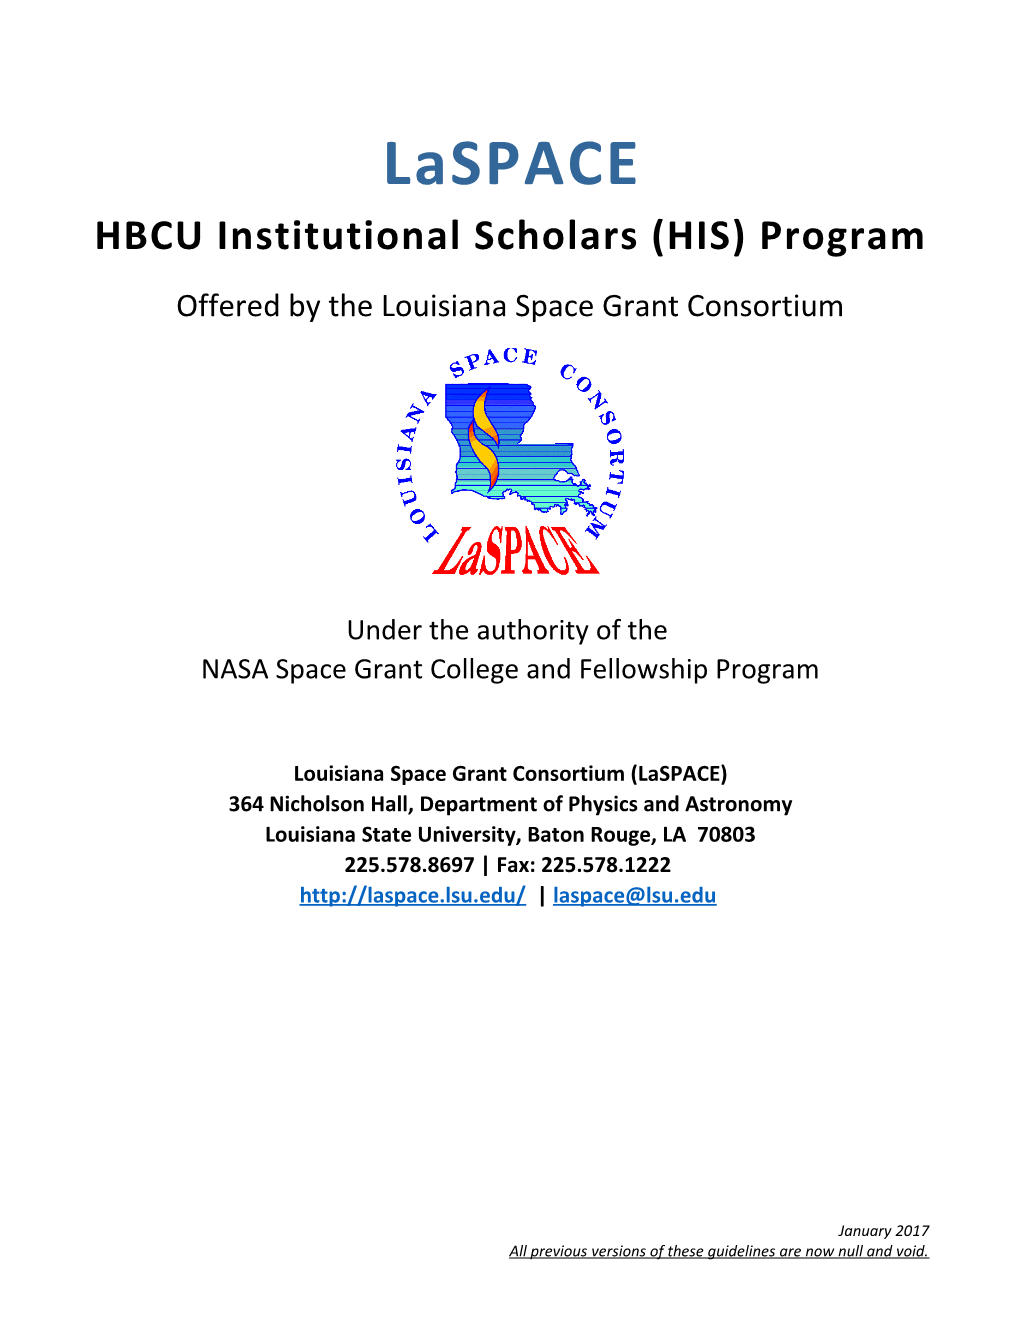 HBCU Institutional Scholars (HIS) Program